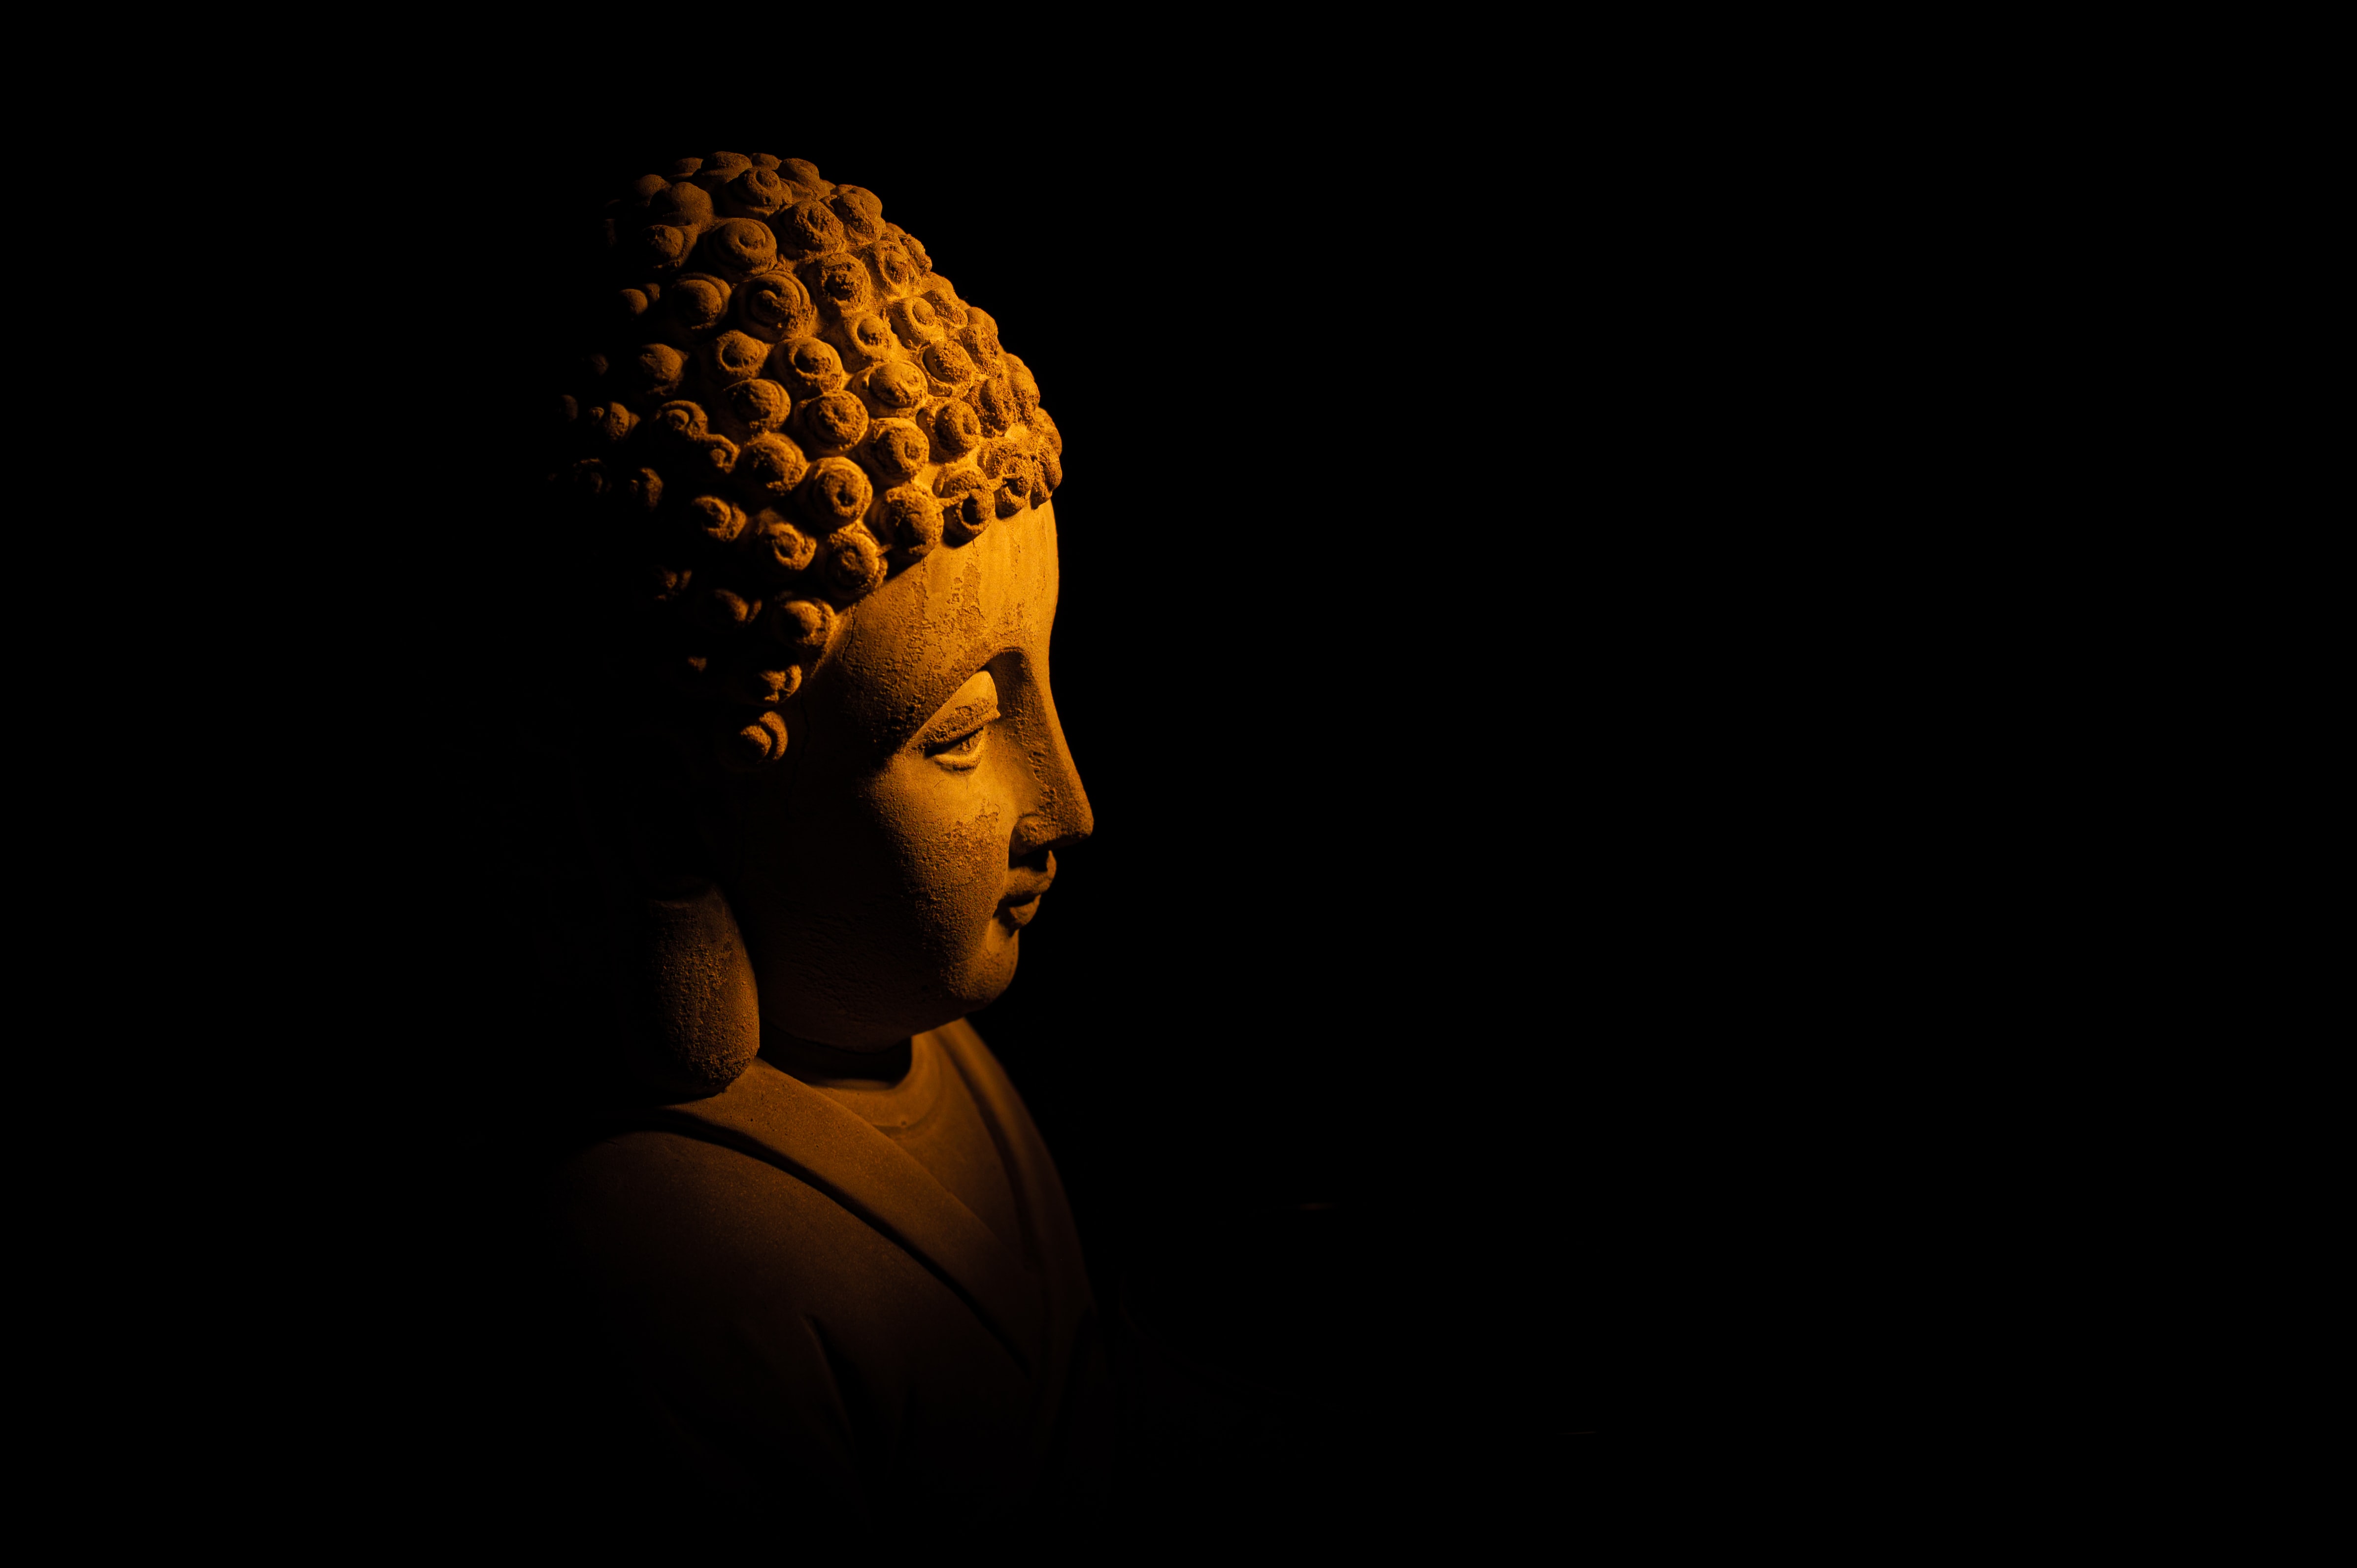 dark, buddha, statue images